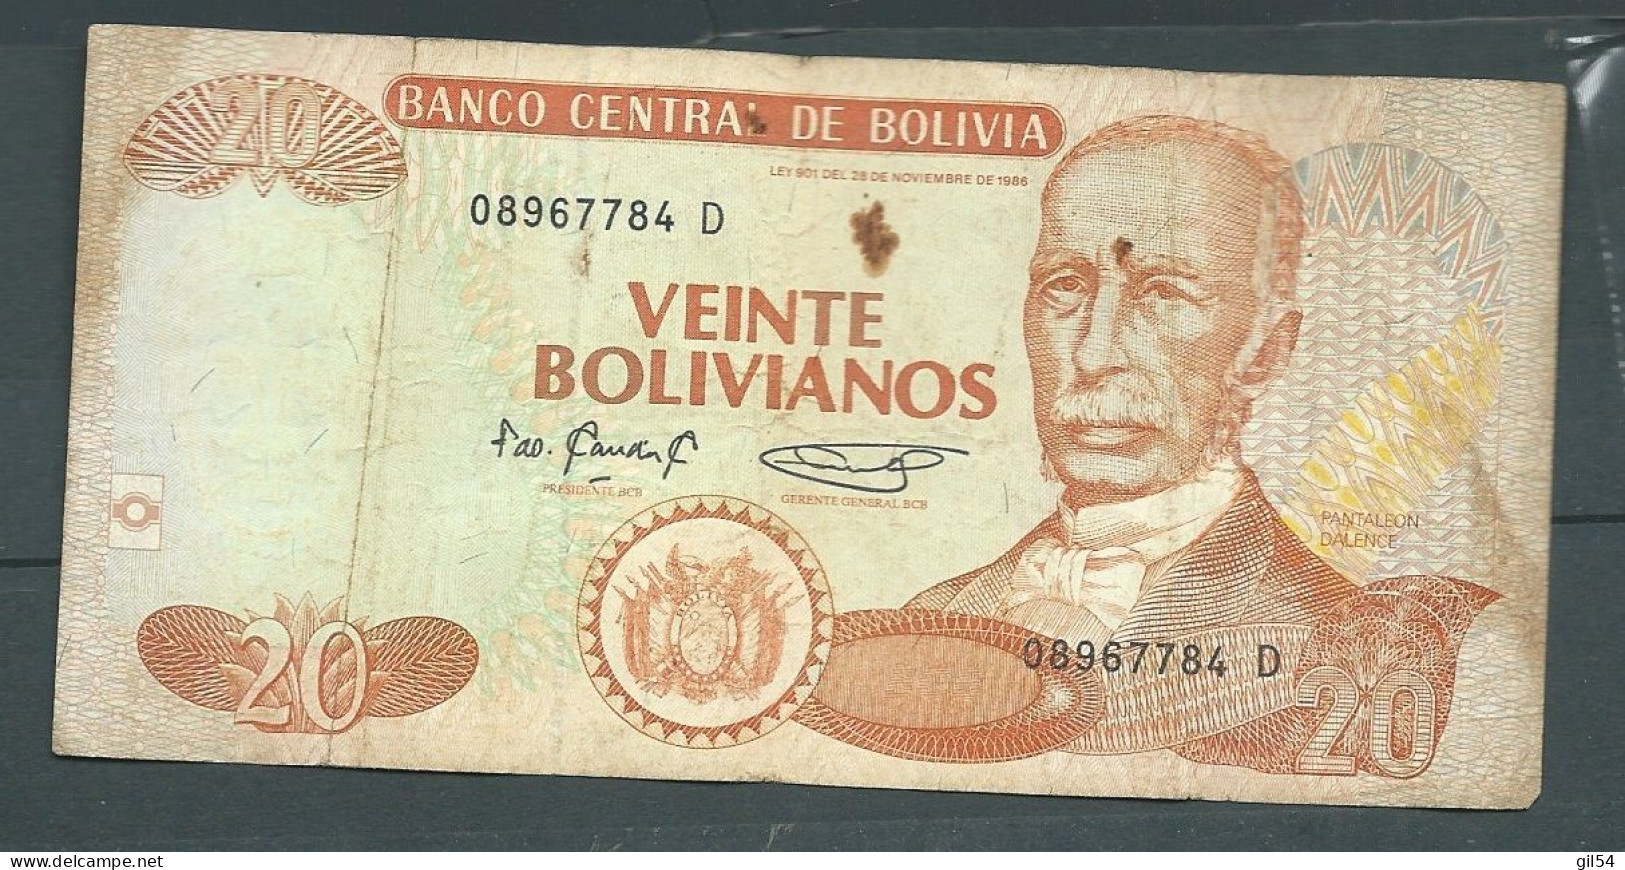 Bolivie - Bolivia 20 Bolivianos 1986  - 08967784 D - Laura 79 23 - Bolivie